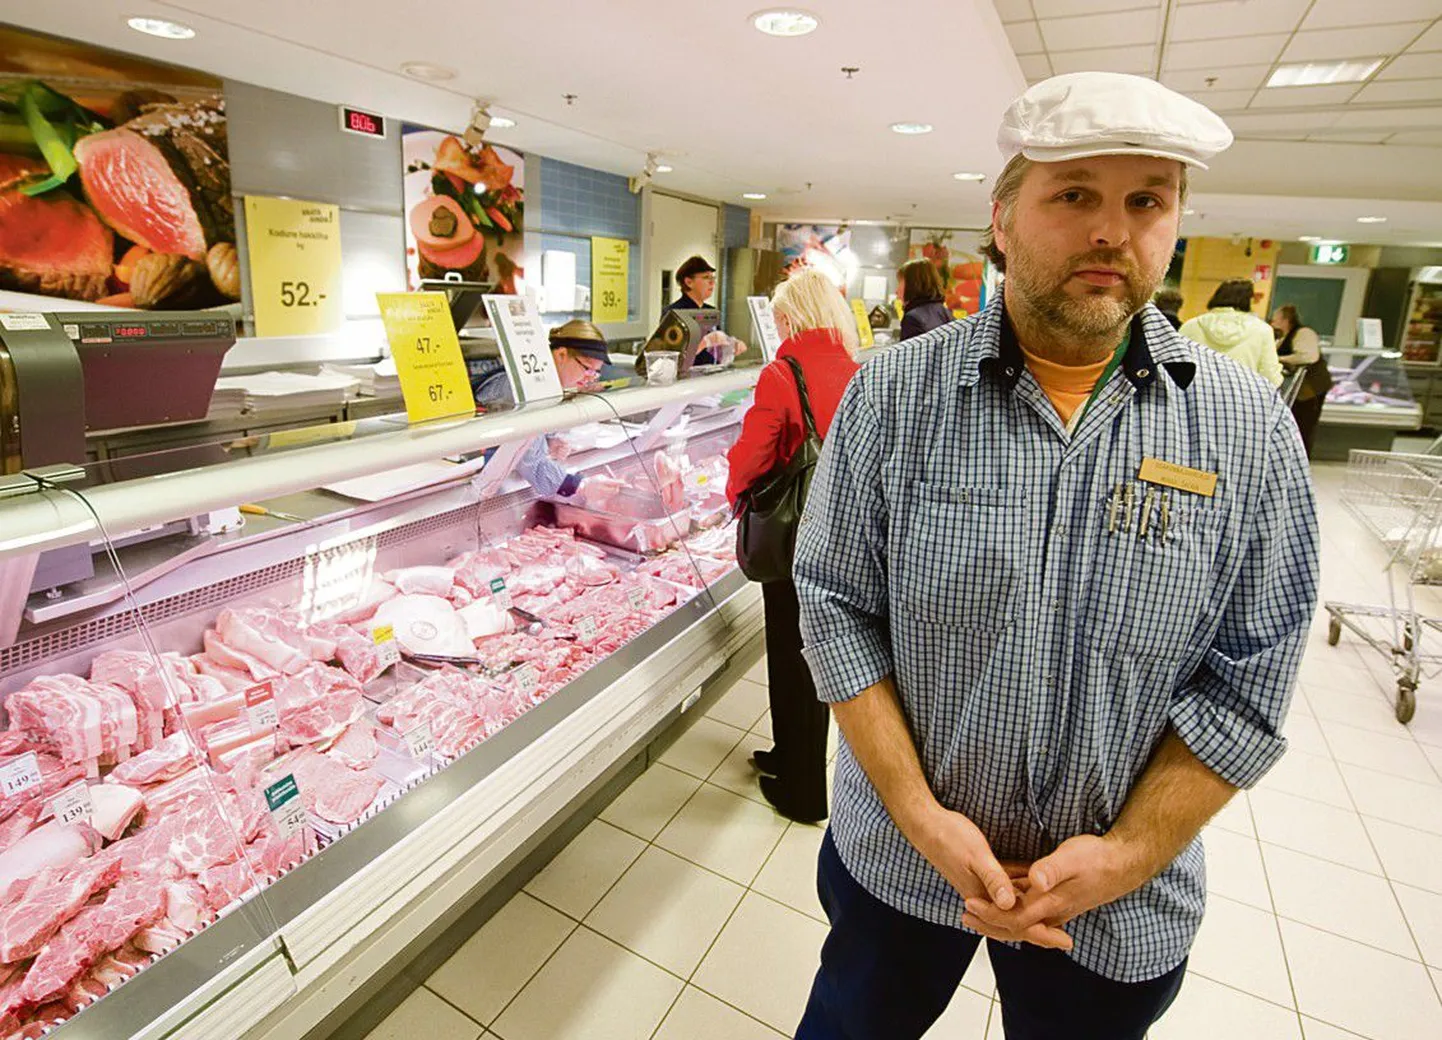 Заведующий мясным отделом Stockmann Михкель Скерин подтвердил, что решение Rimi отказаться от продажи эстонского мяса благоприятно сказалось на продажах отдела — выросло число покупателей, причем многие из них интересовались именно отечественной продукцией.